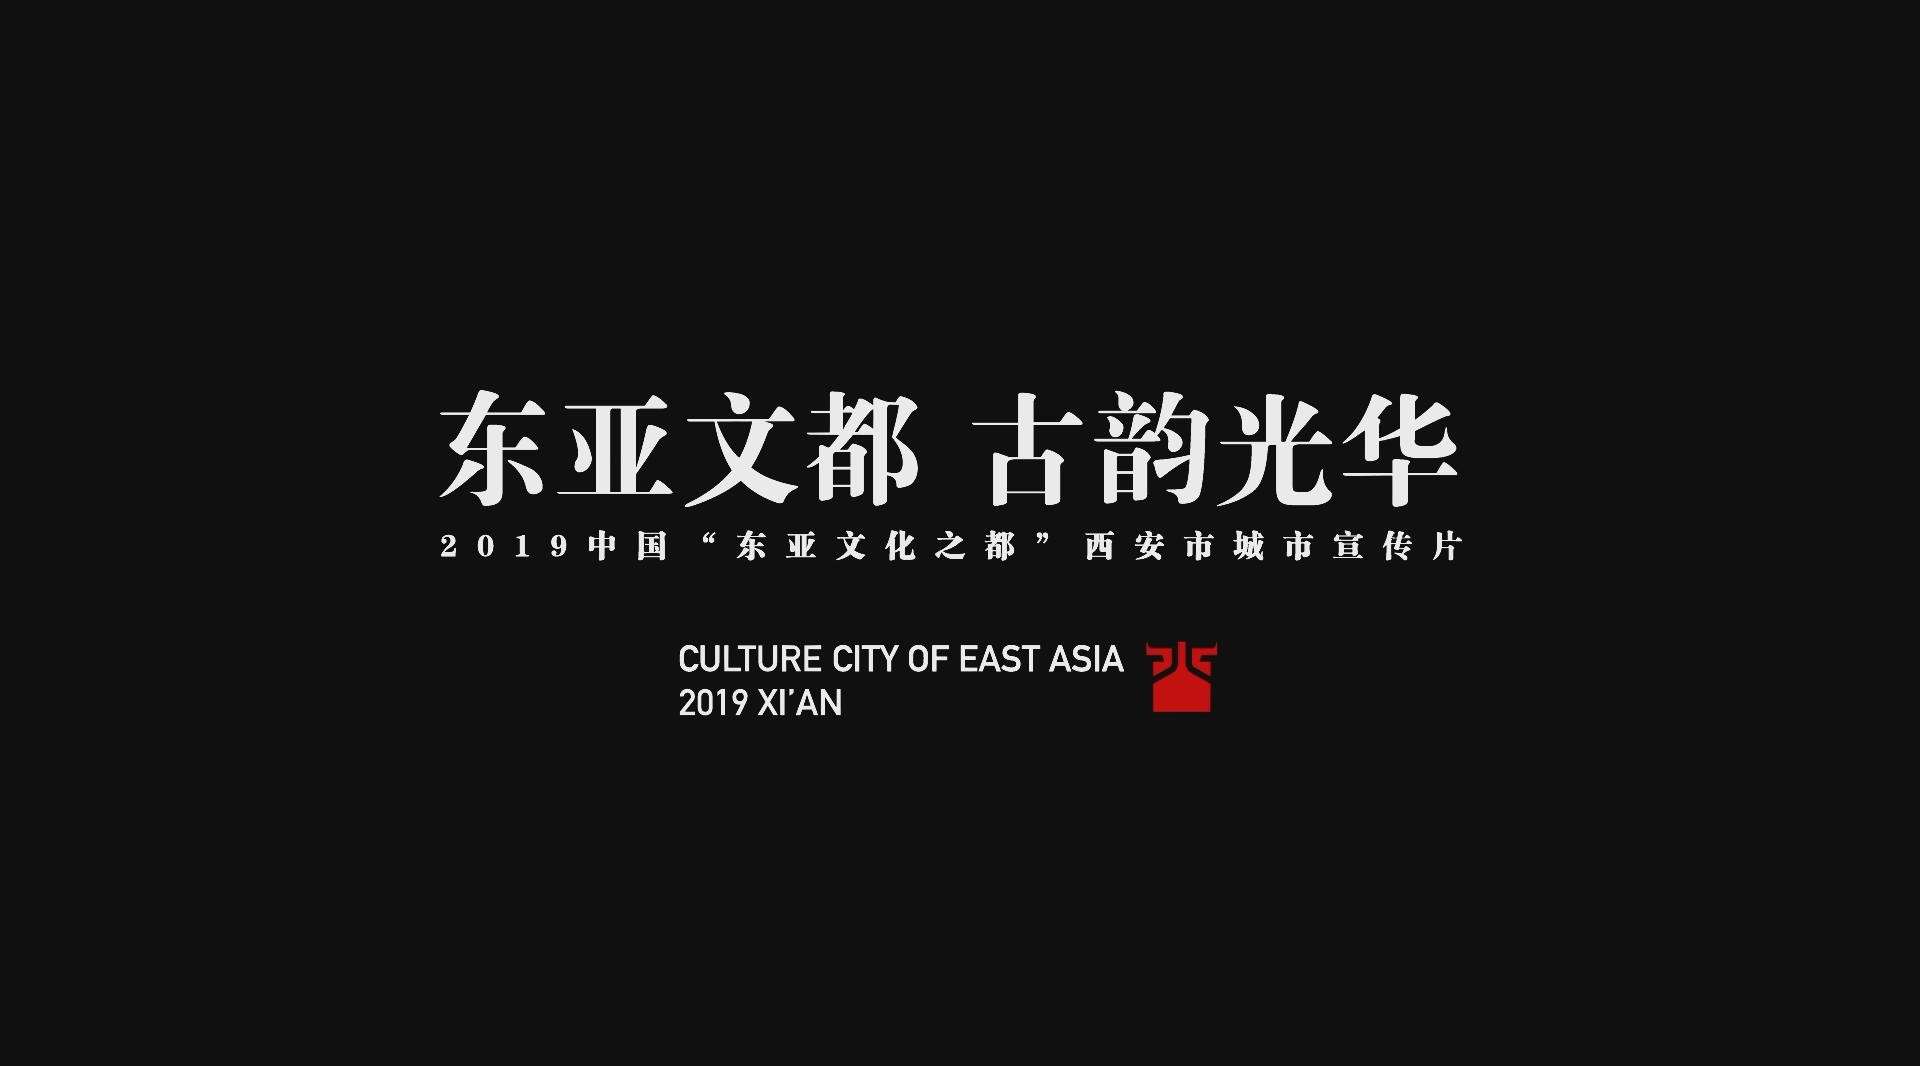 2019年东亚文化之都西安城市宣传片